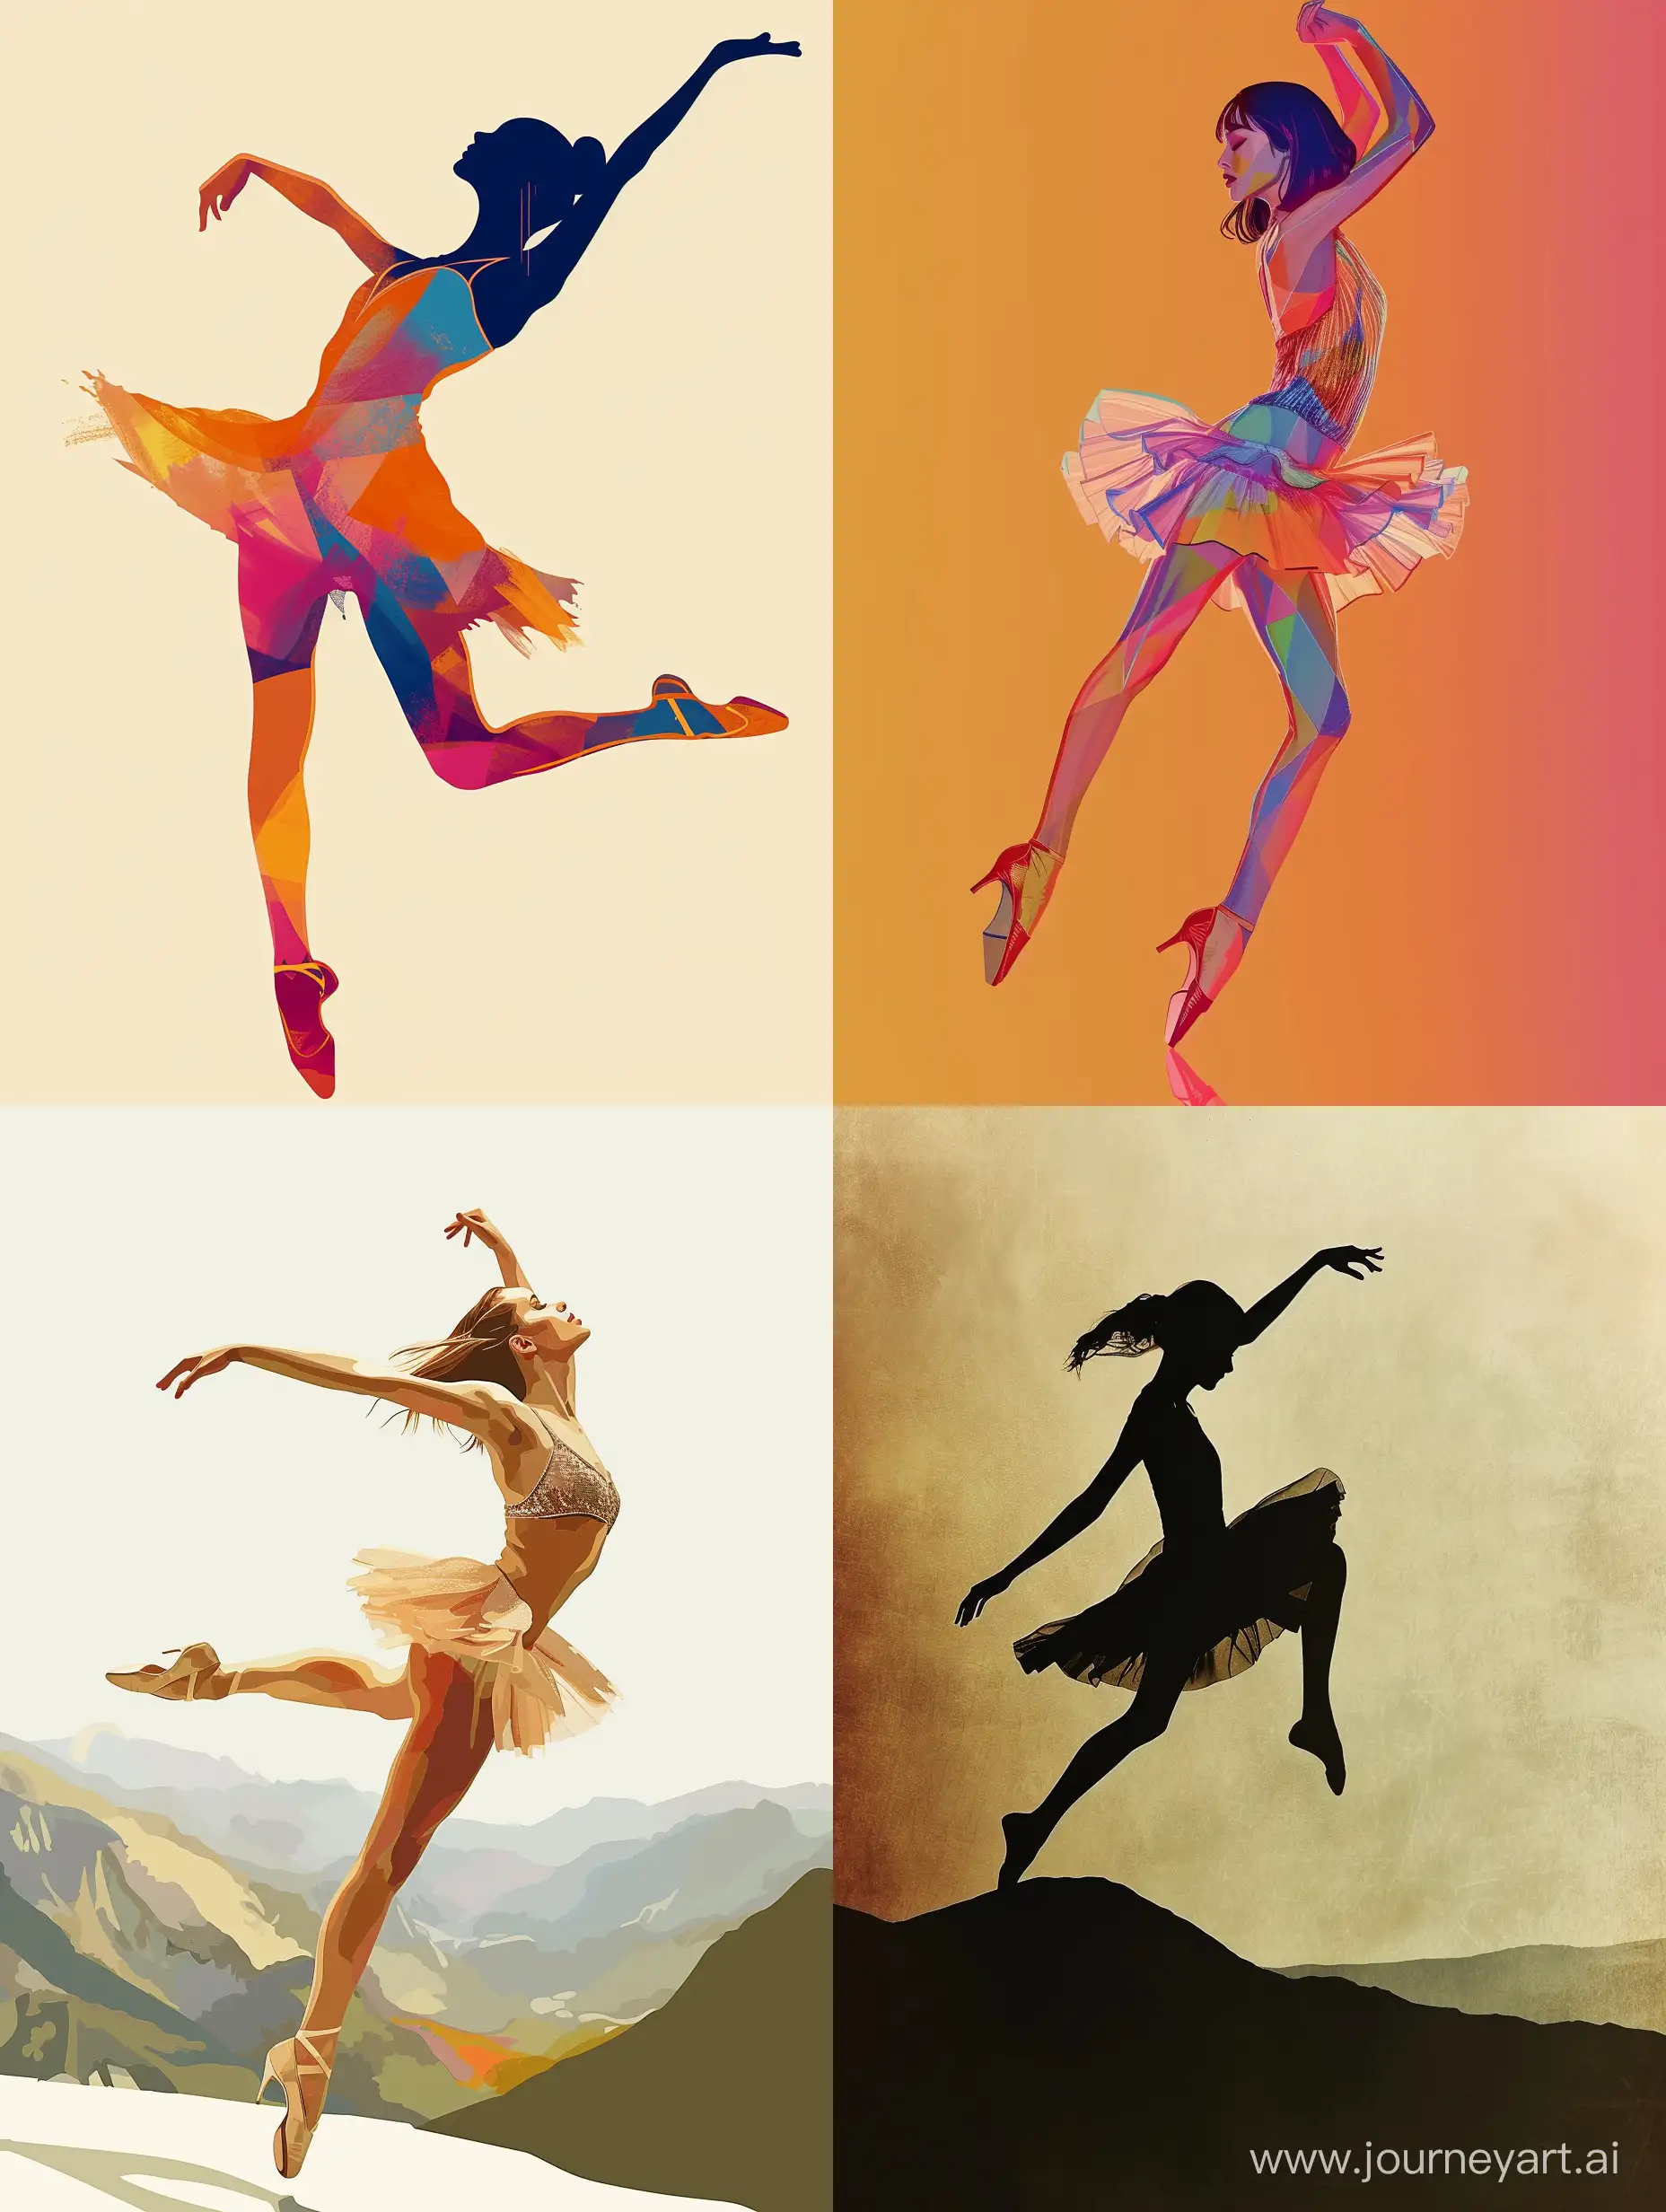 Танцовщица хайхиллз танцует в красивом коротком платье в ботинках на высоких каблуках,  цвет красивый, краски яркие, стиль минимализм, стиль символизм, иллюстрация